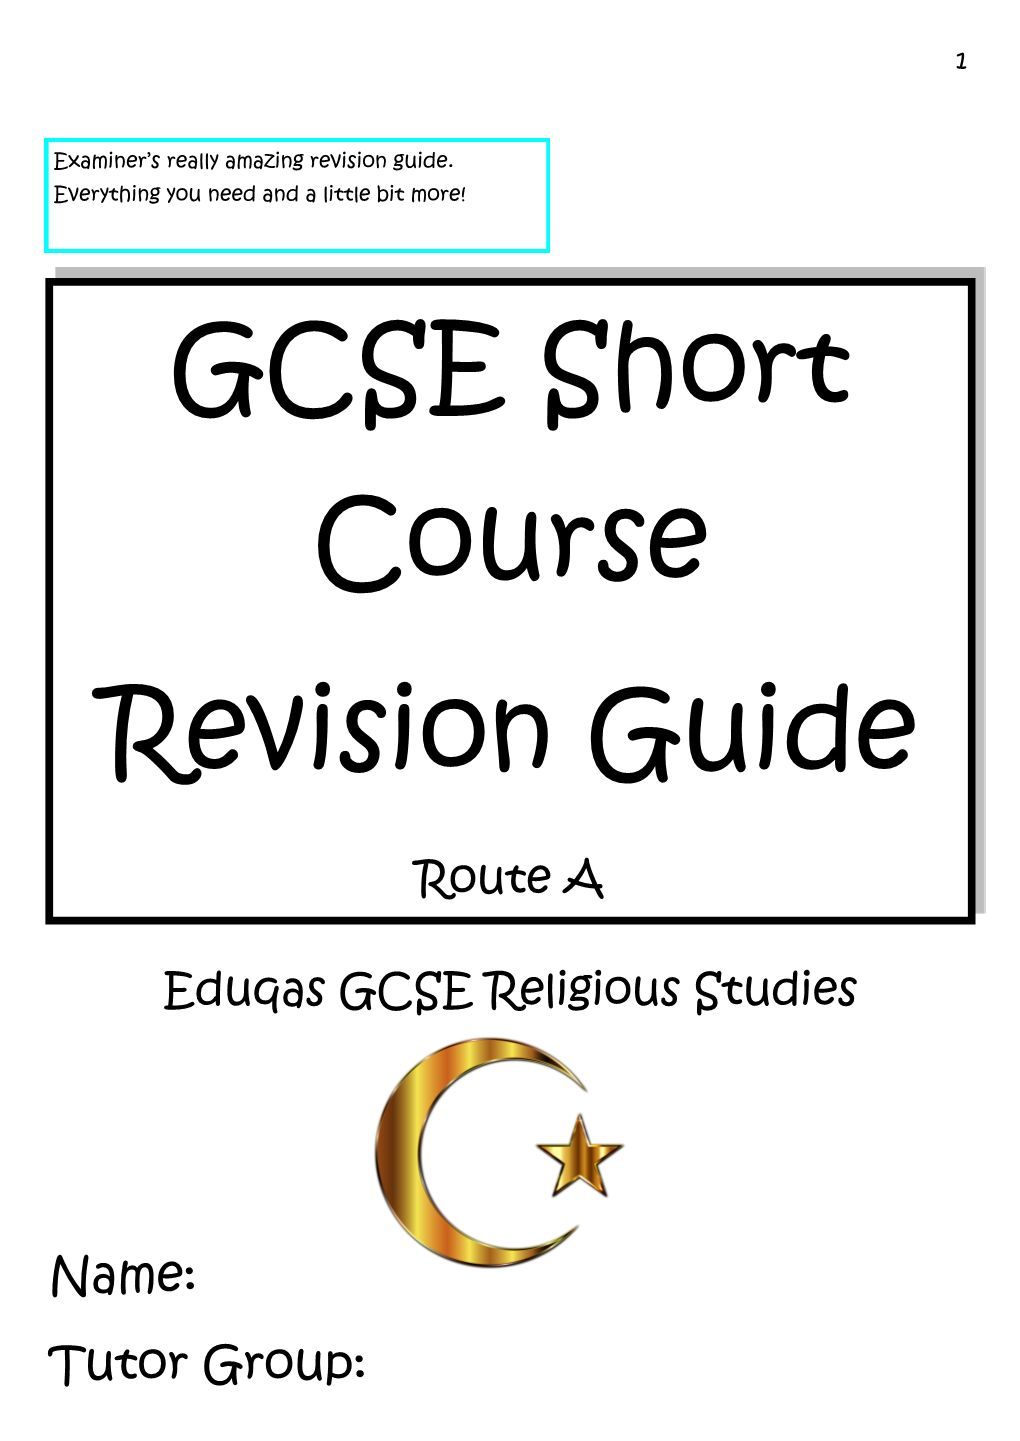 GCSE Short Course Revision Guide